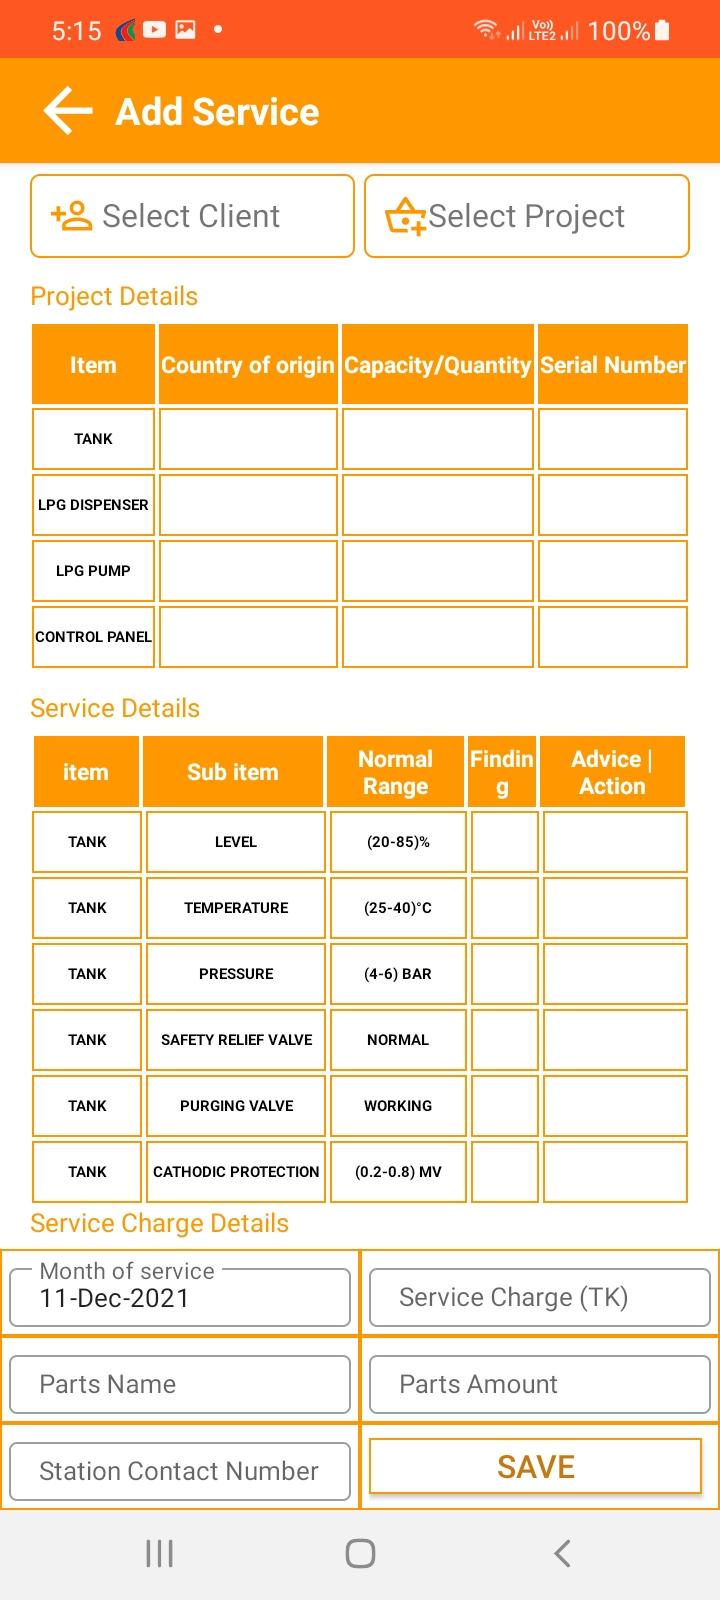 Service schedules